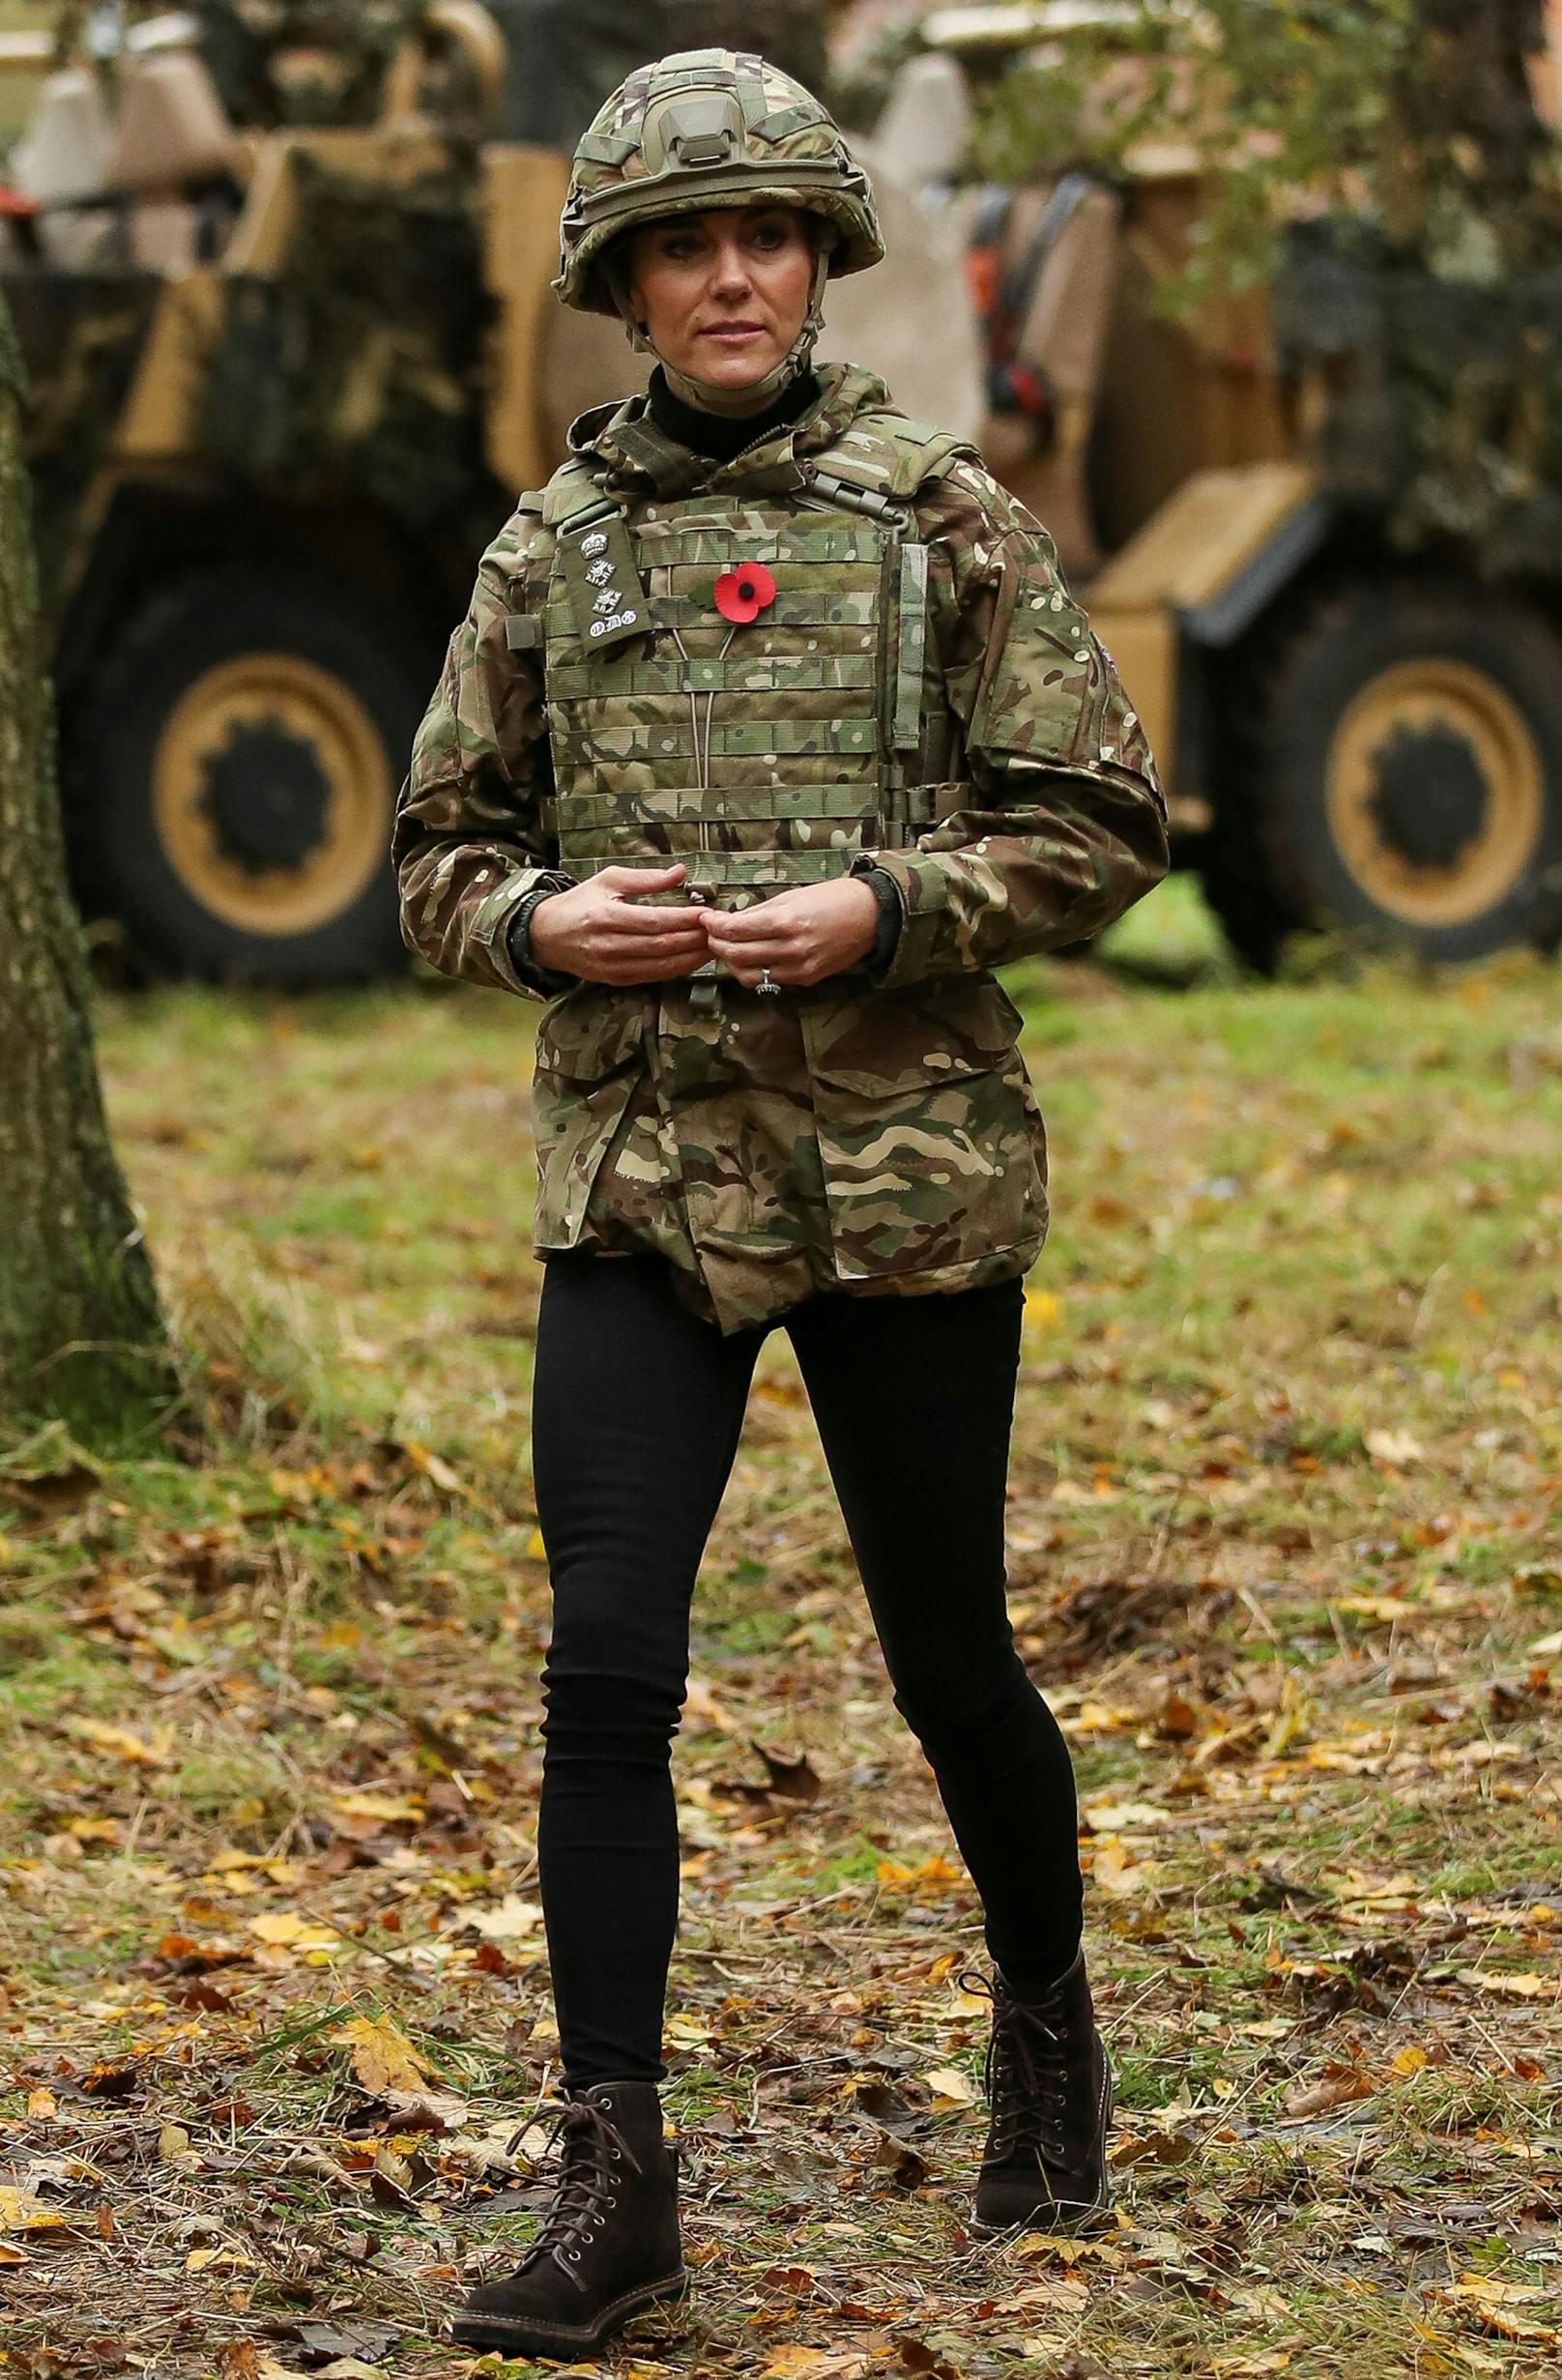 Prinzessin Kate besucht "Dragoon Guards" und wird selbst zur Soldatin.